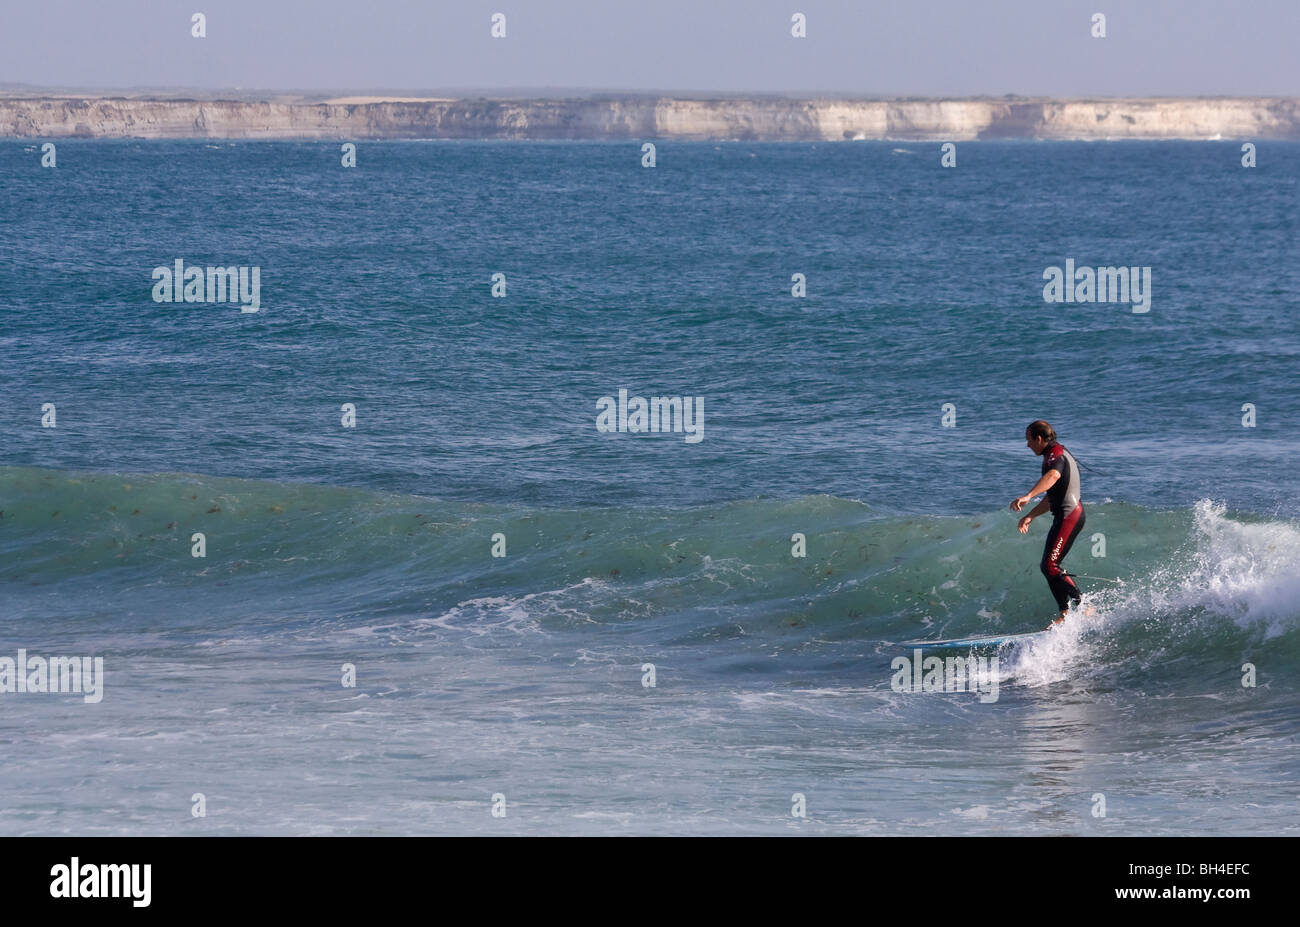 Surfer sur la Sardaigne. Mini Capo Capo Mannu. L'Italie, Sardaigne, île, mer Méditerranée Banque D'Images